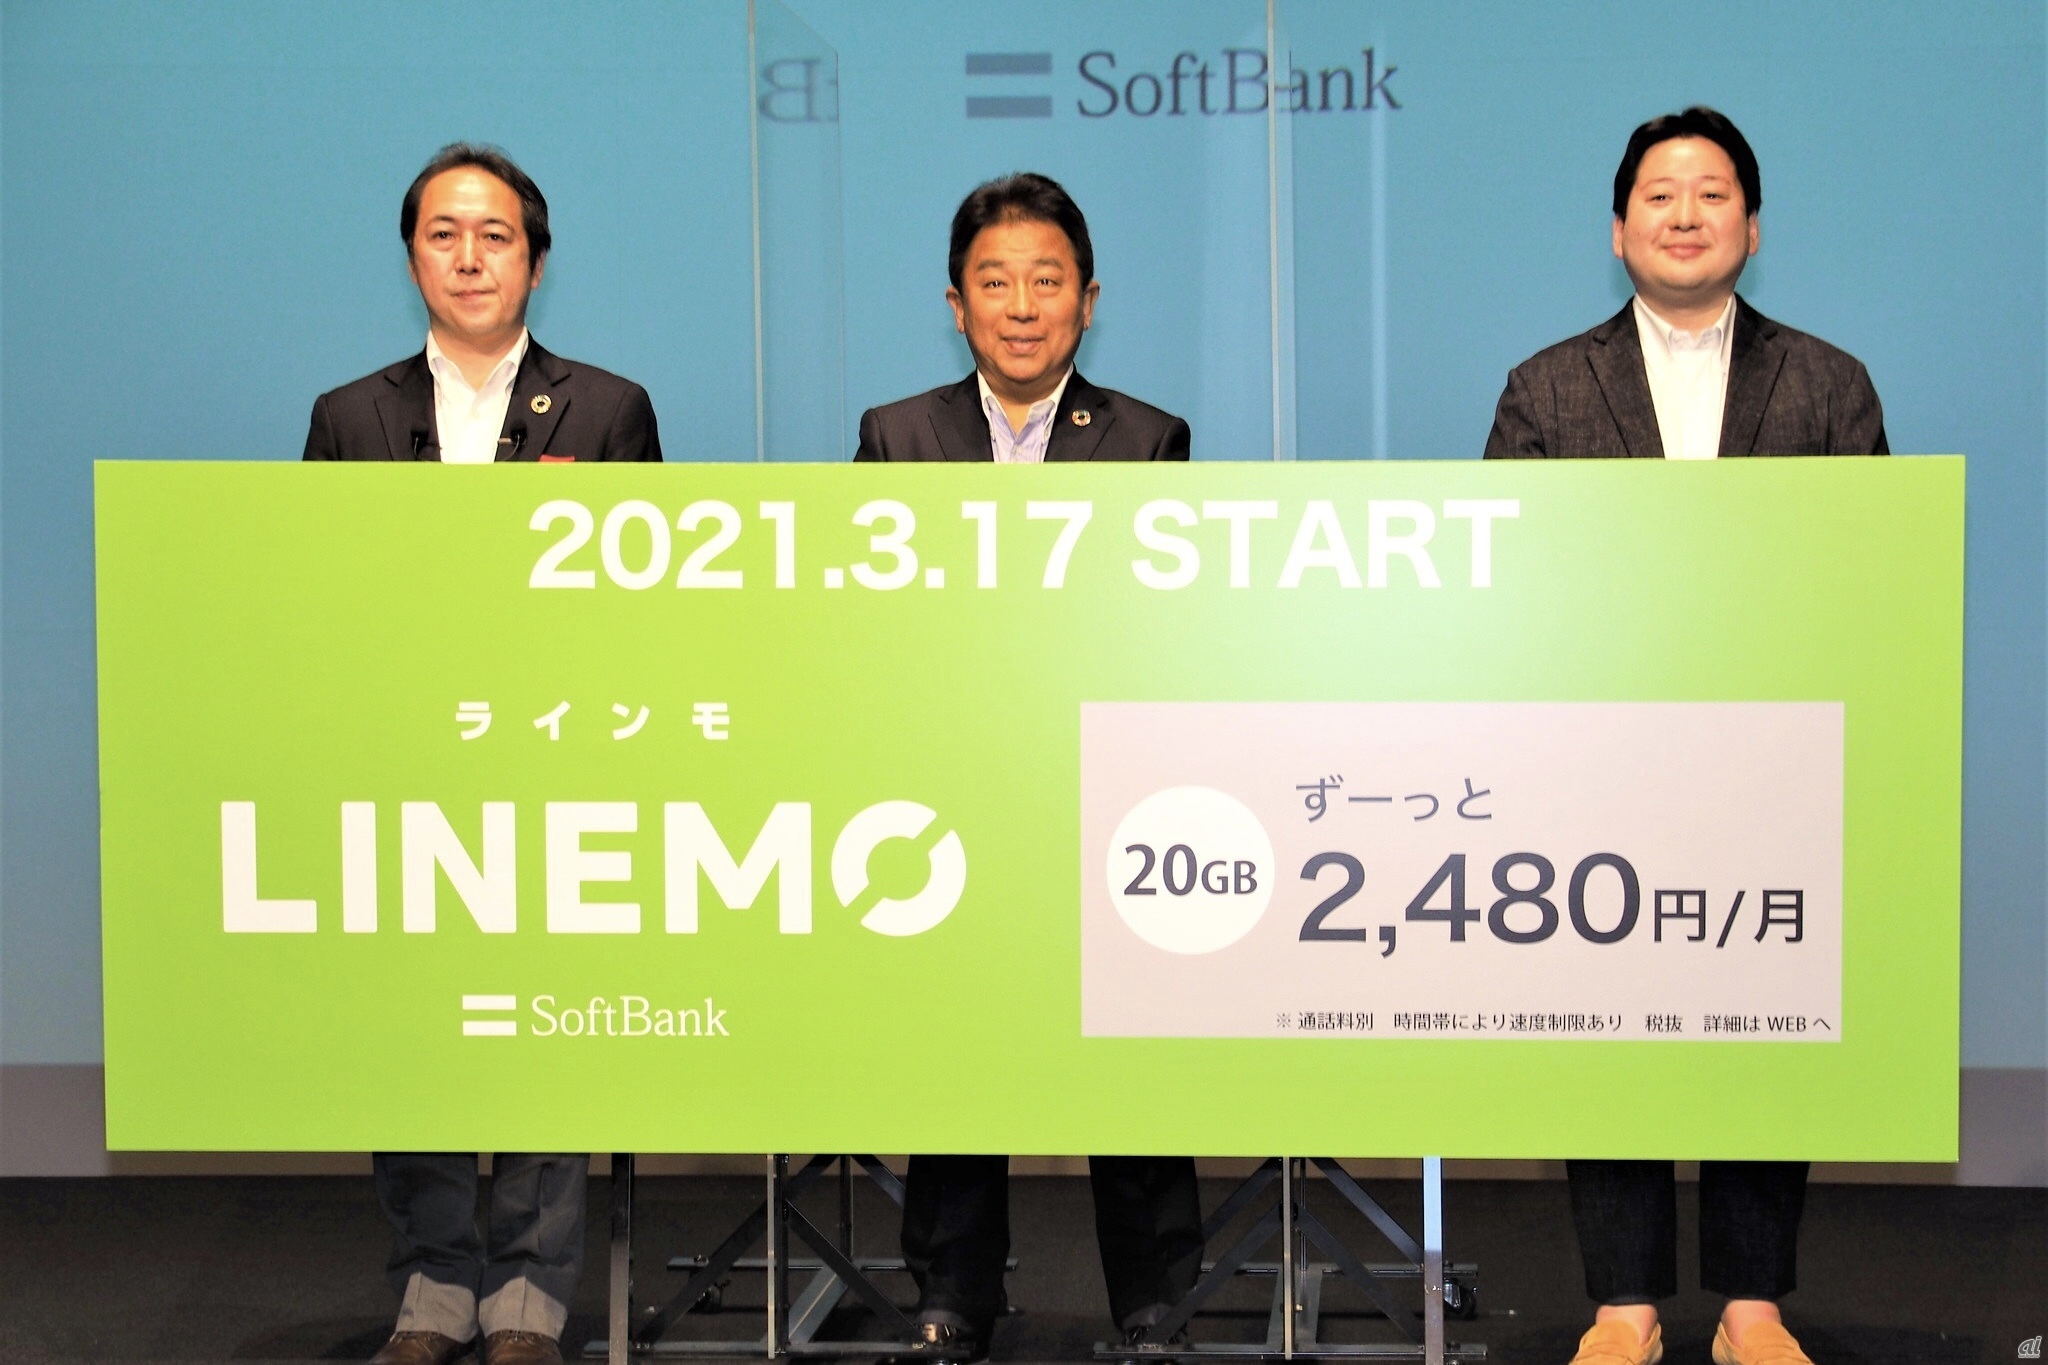 ahamoに対抗するべく、2021年に入り各社はオンライン専用プランを相次いで発表。ソフトバンクはLINEとの連携を重視した「LINEMO」の提供を開始している